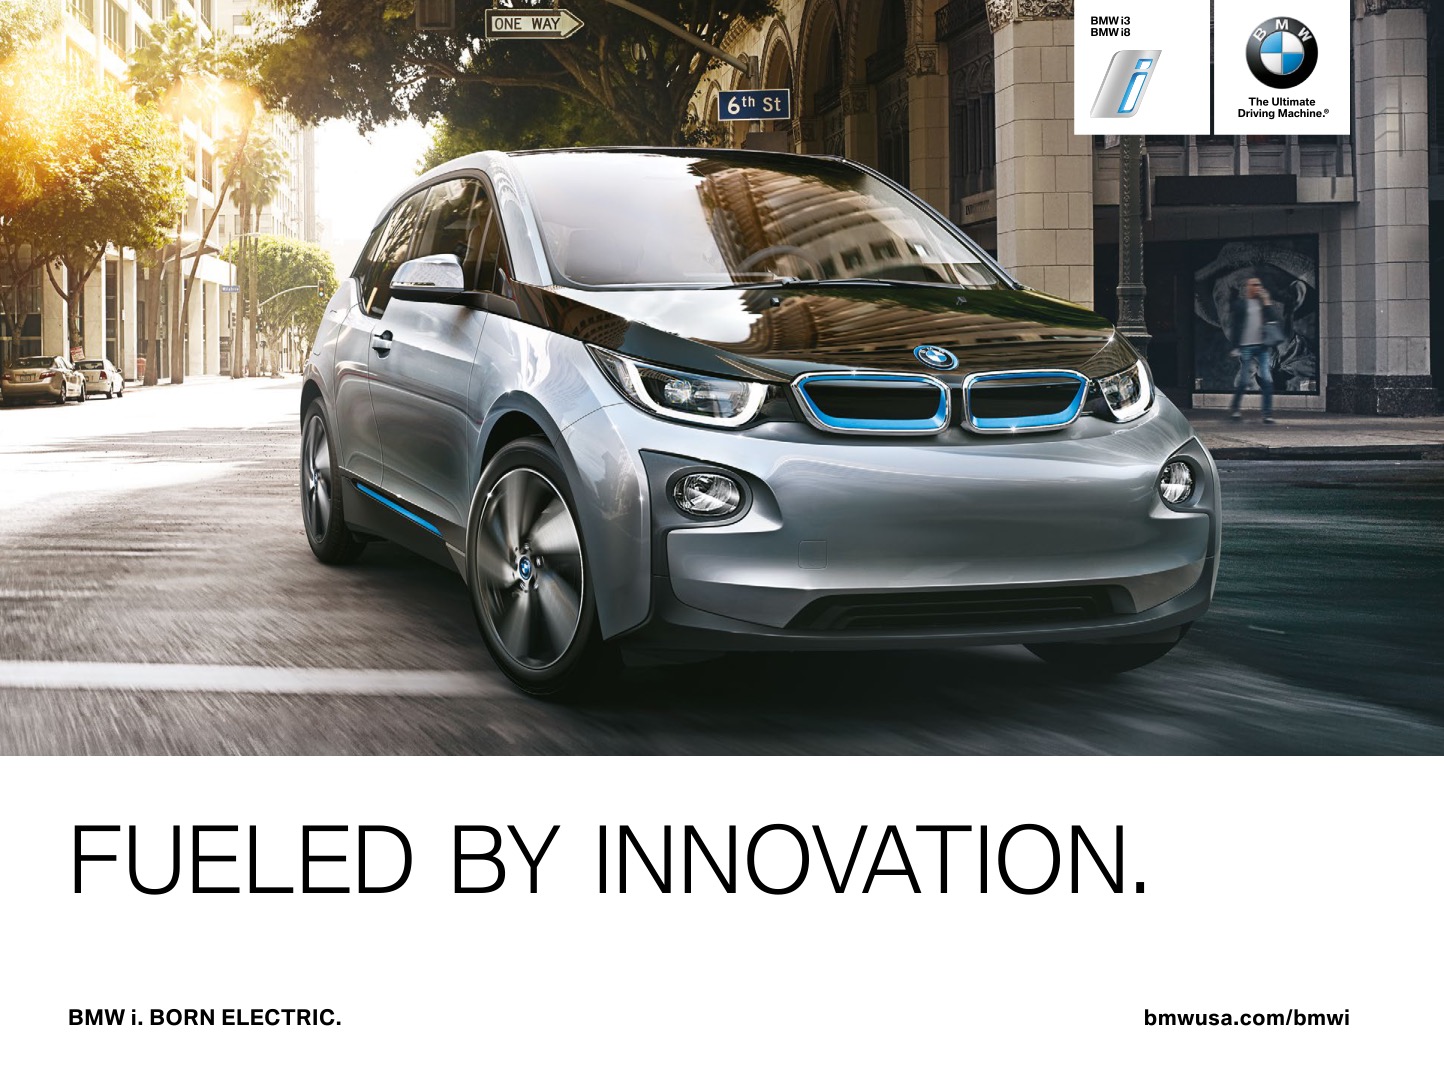 2014 BMW iSeries Brochure